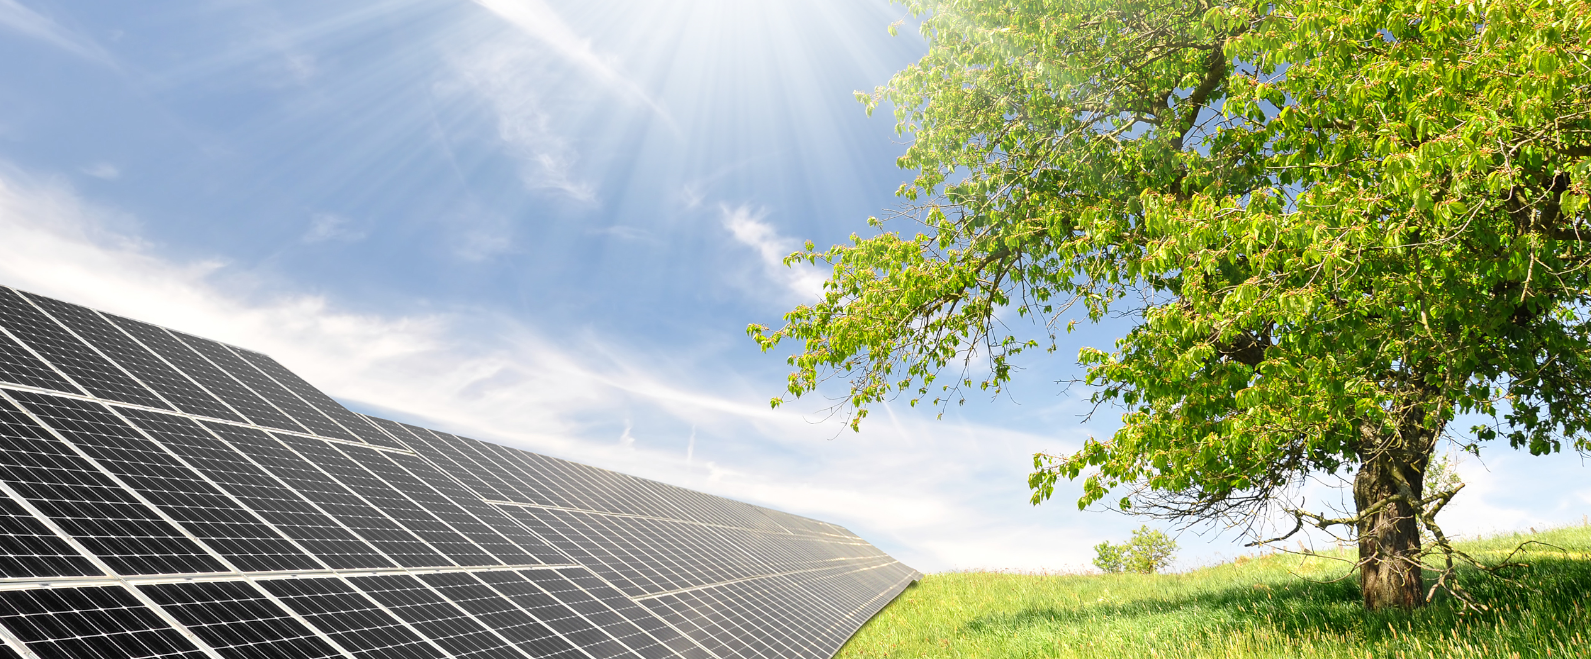 Grupa Azoty ustaliła kluczowe warunki transakcji dotyczące nabycia 100% udziałów w kapitale zakładowym Solarfarm Brzezinka